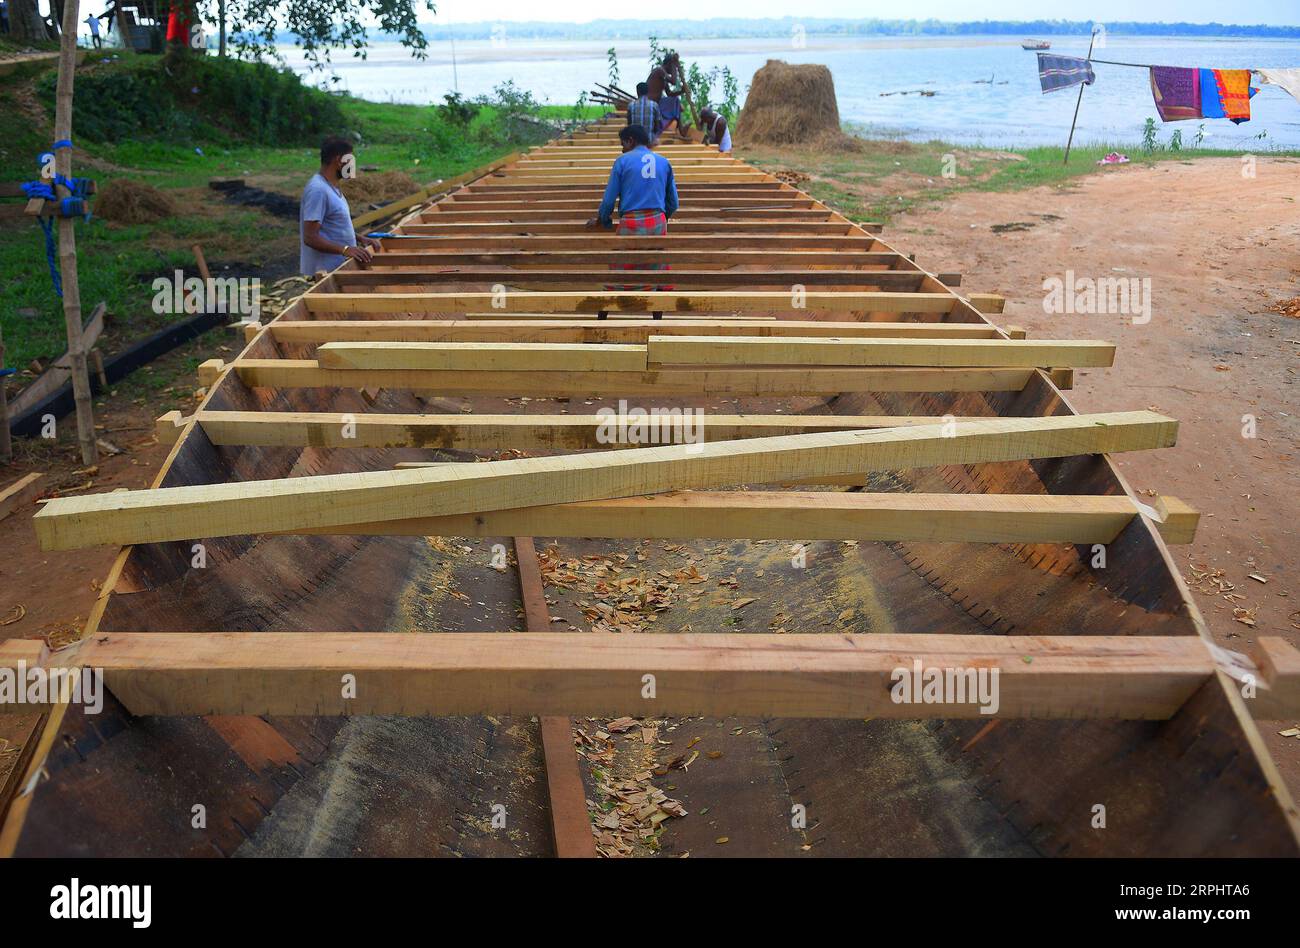 191117 -- AGARTALA, 17 novembre 2019 -- lavoratori indiani costruiscono una barca sulla riva di un lago ad Agartala, nello stato nordorientale di Tripura, India, 17 novembre 2019. Str/Xinhua INDIA-AGARTALA-DAILY LIFE Stringer PUBLICATIONxNOTxINxCHN Foto Stock